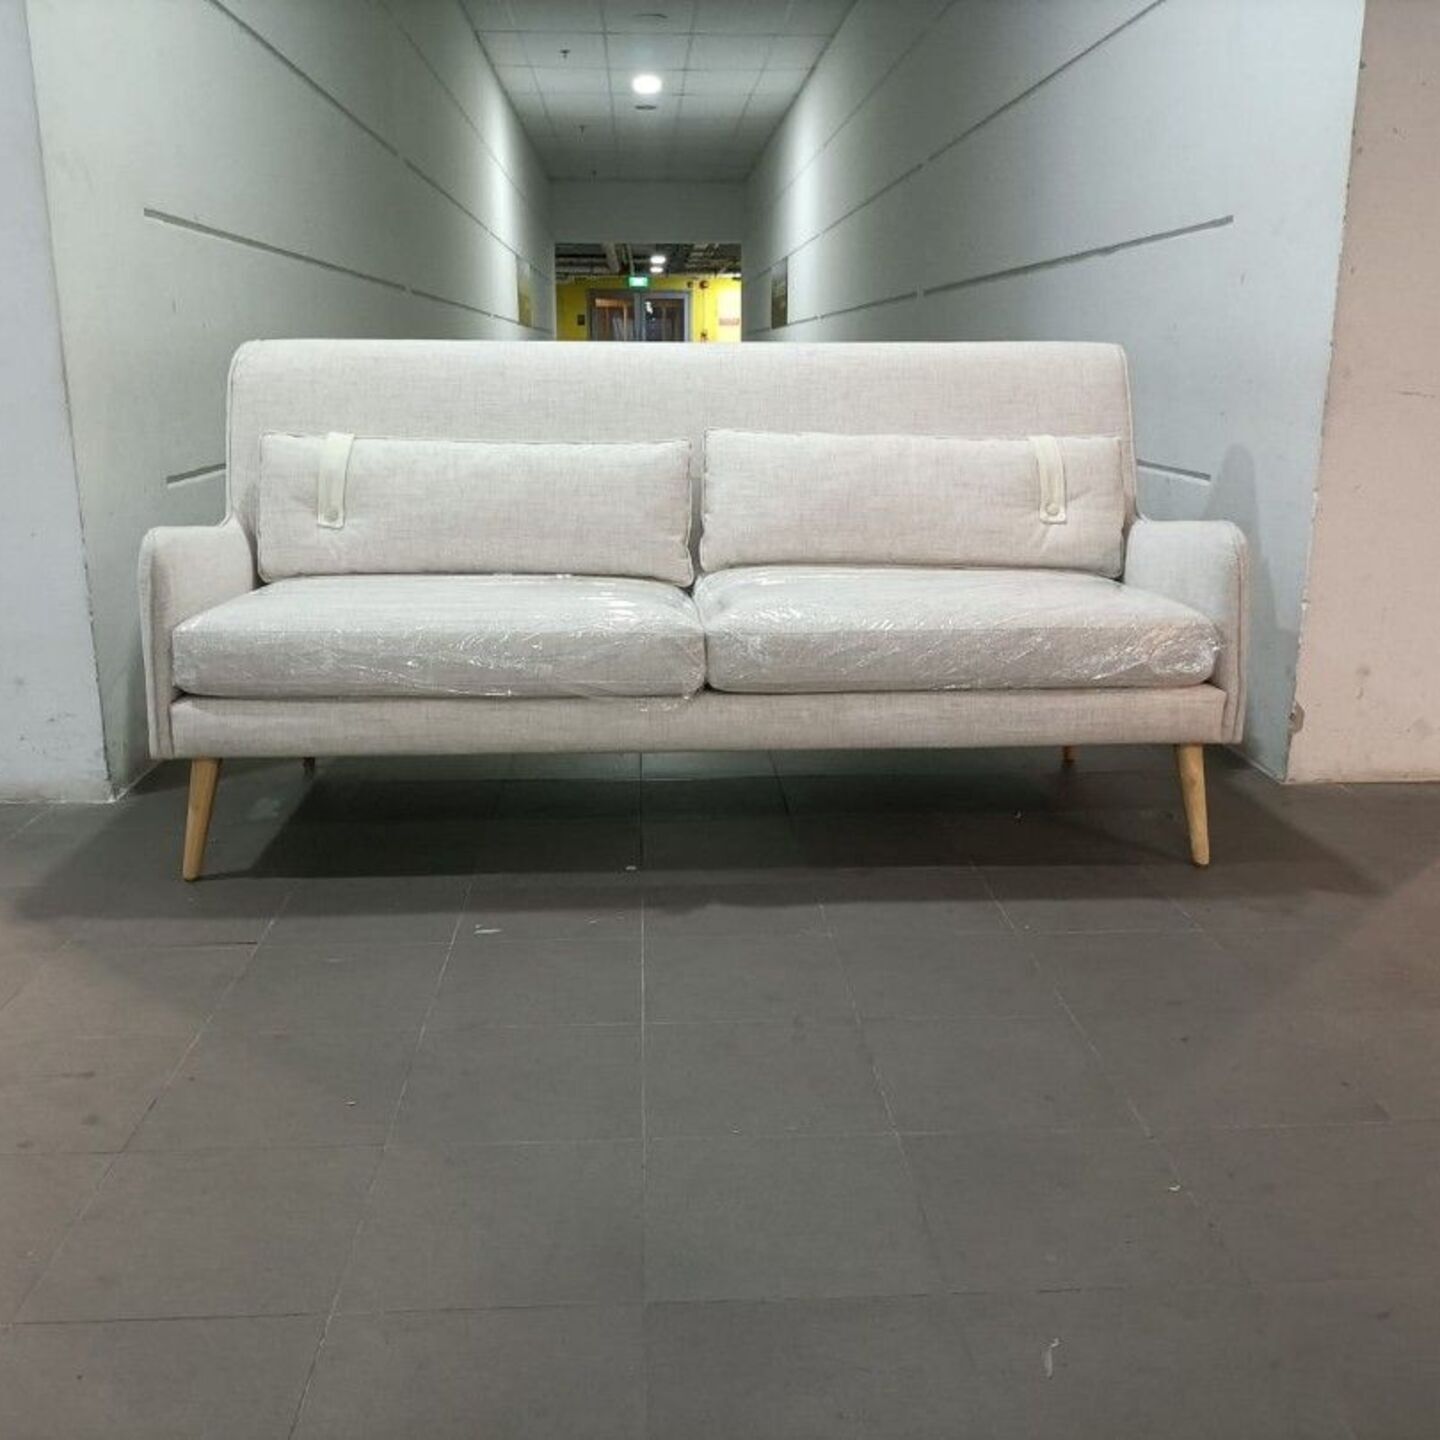 SERIPHUS 2.5 Seater Sofa in CREAM FABRIC